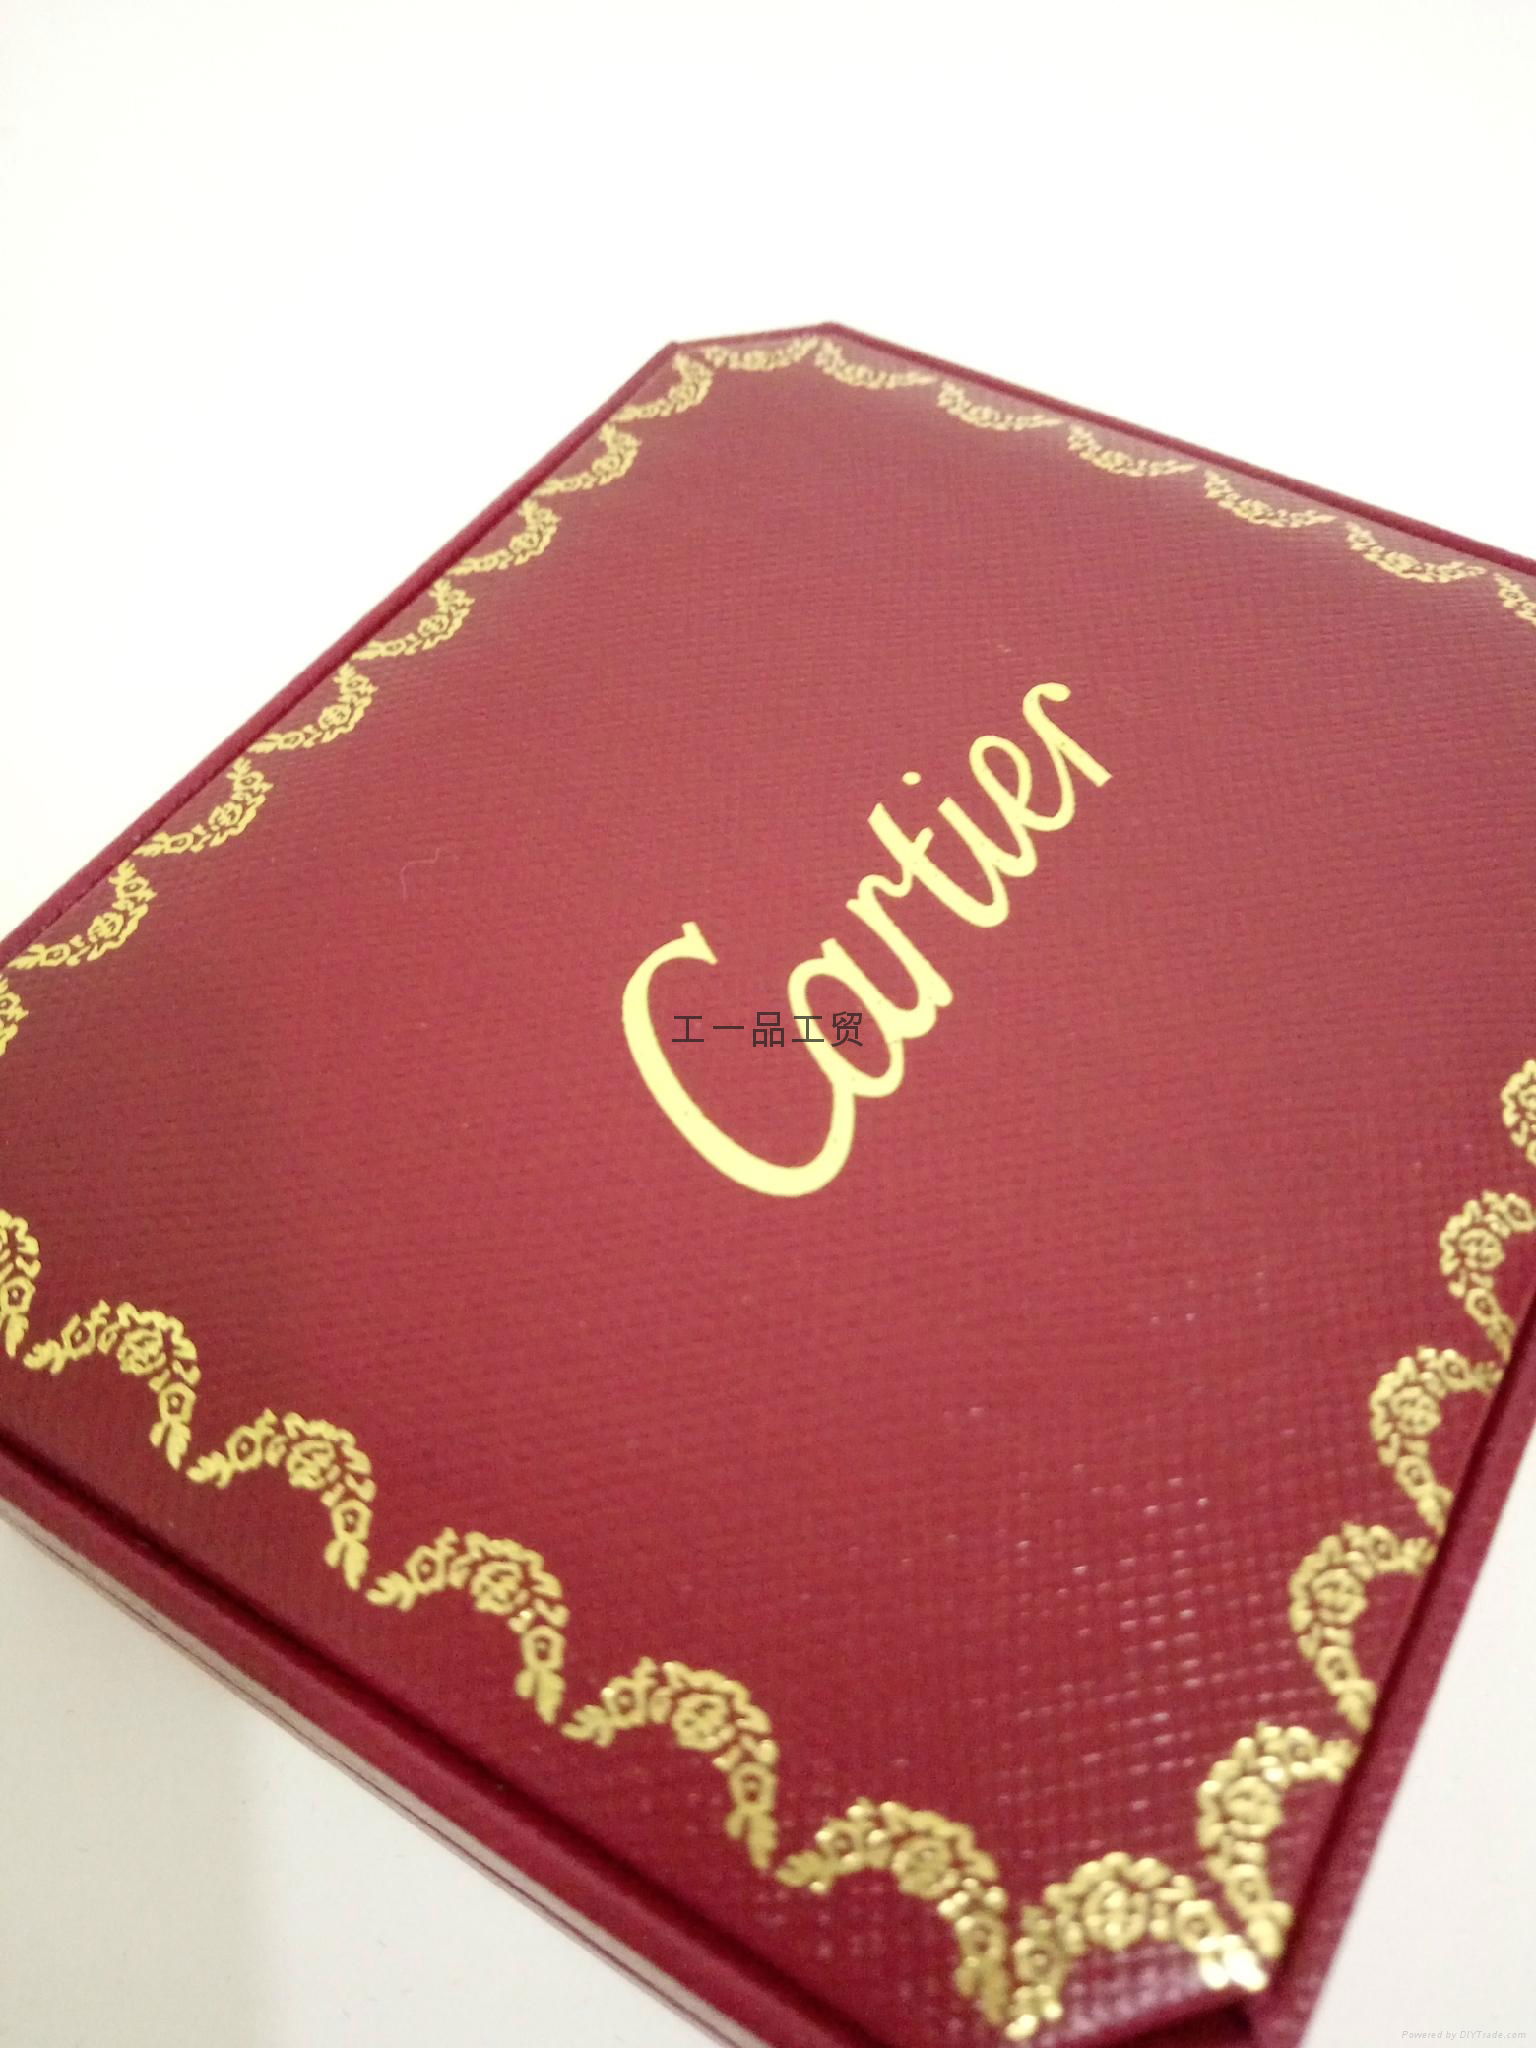 Cartier star jewelry box 4